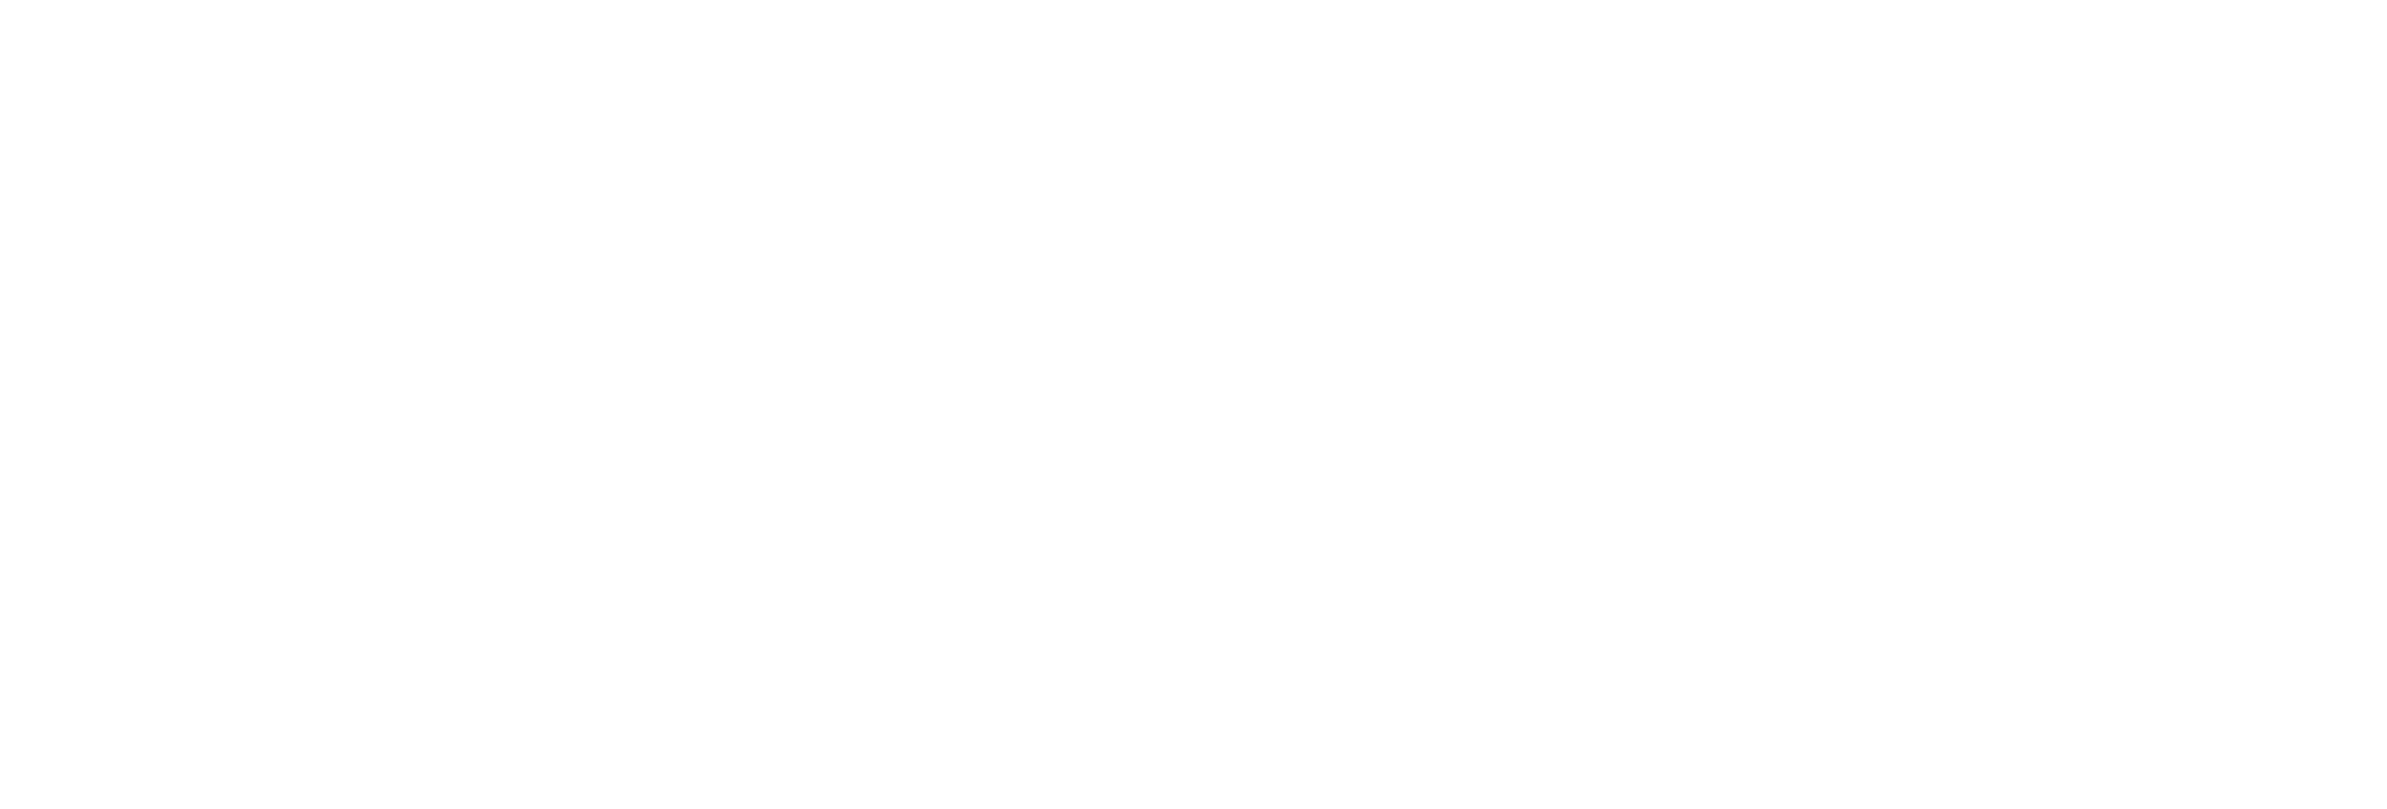 logo - redeweise - weiss